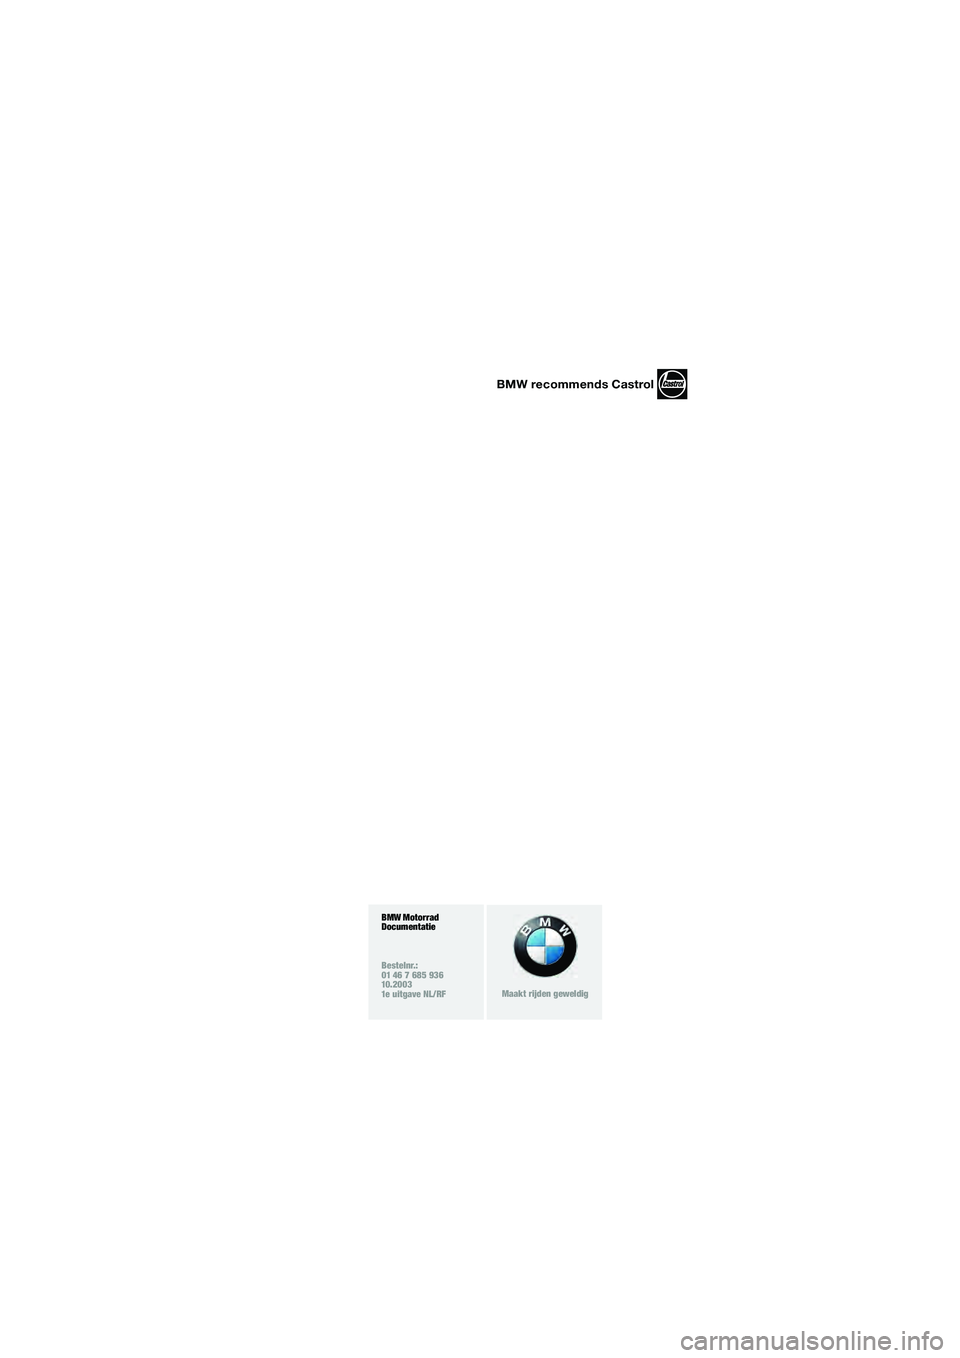 BMW MOTORRAD F 650 GS 2003  Handleiding (in Dutch) 1
BMW recommends Castrol
BMW Motorrad
Documentatie 
Bestelnr.:
01 46 7 685 936
10.2003
1e uitgave NL/RF
Maakt rijden geweldig
10R13bkn4.book  Seite 3  Montag, 22. September 2003  3:54 15 